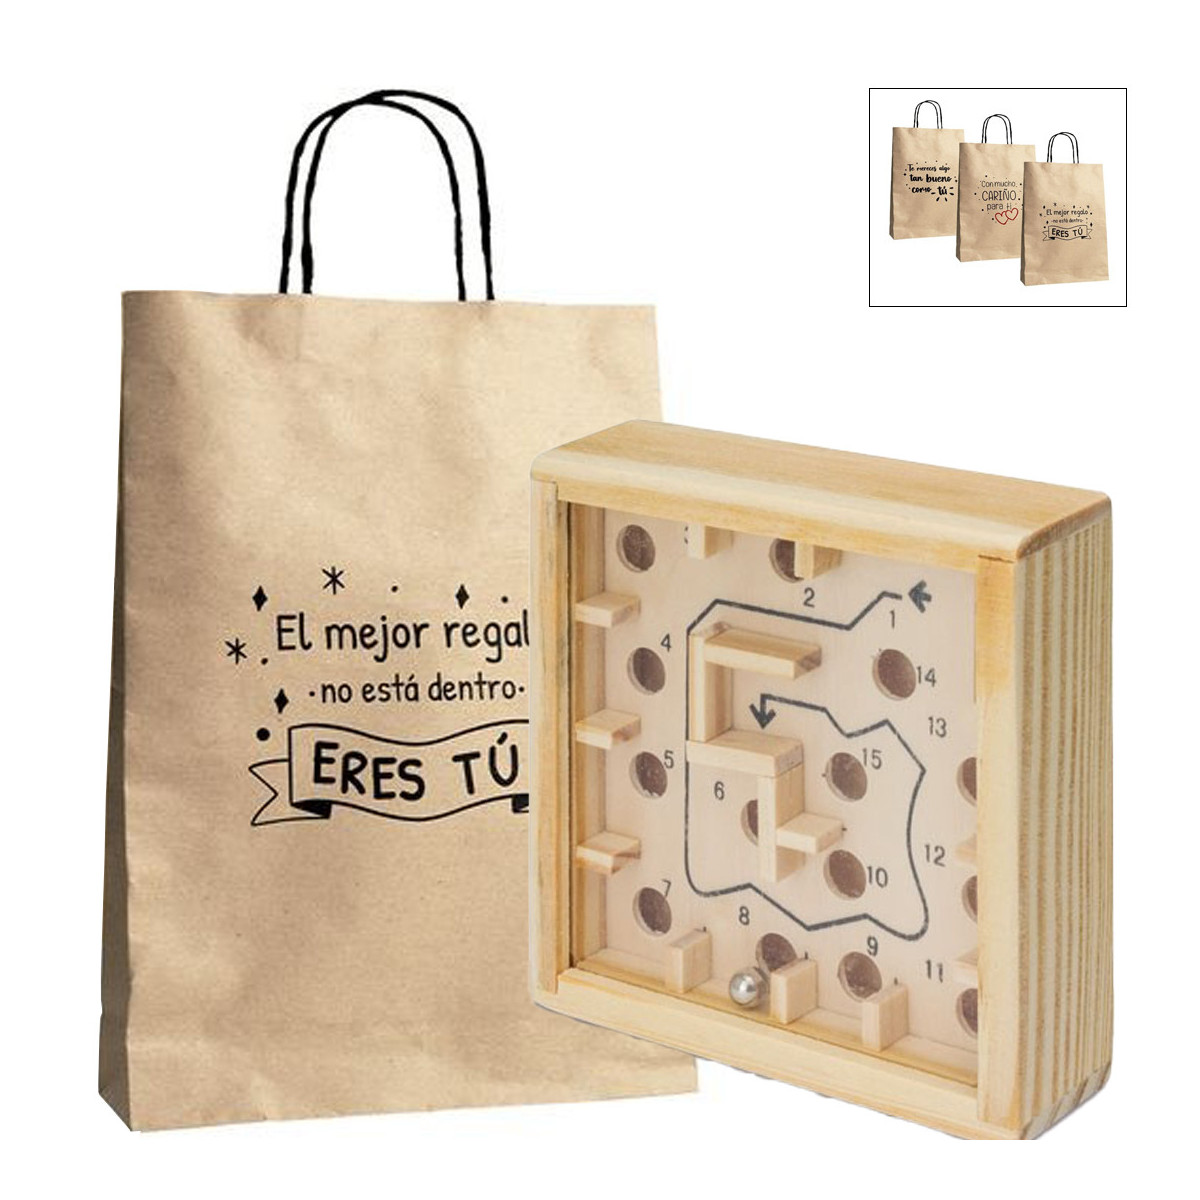 Laberinto con canicas en caja de madera y presentado en bolsa de papel con mensajes